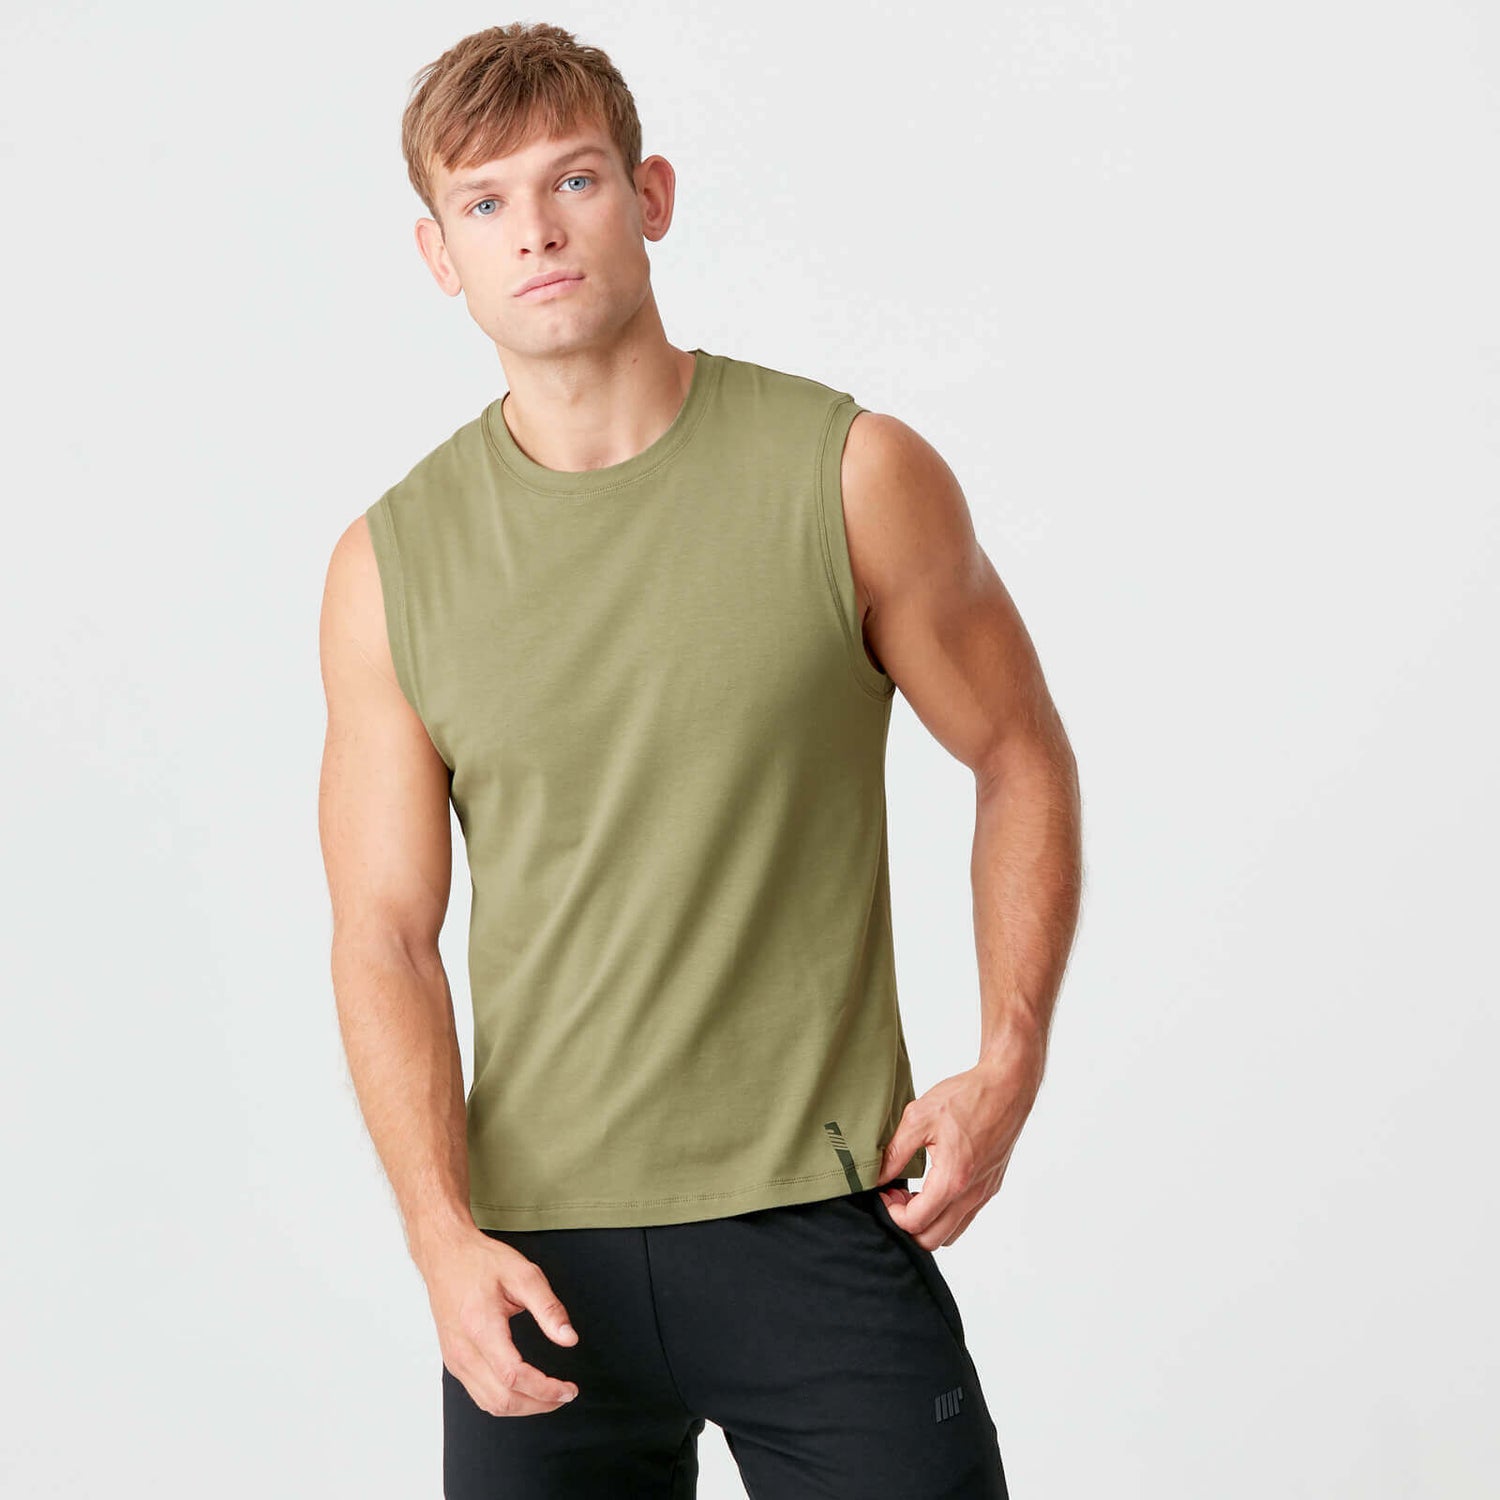 Buy Men's Luxe Classic Sleeveless T-Shirt, Light Olive